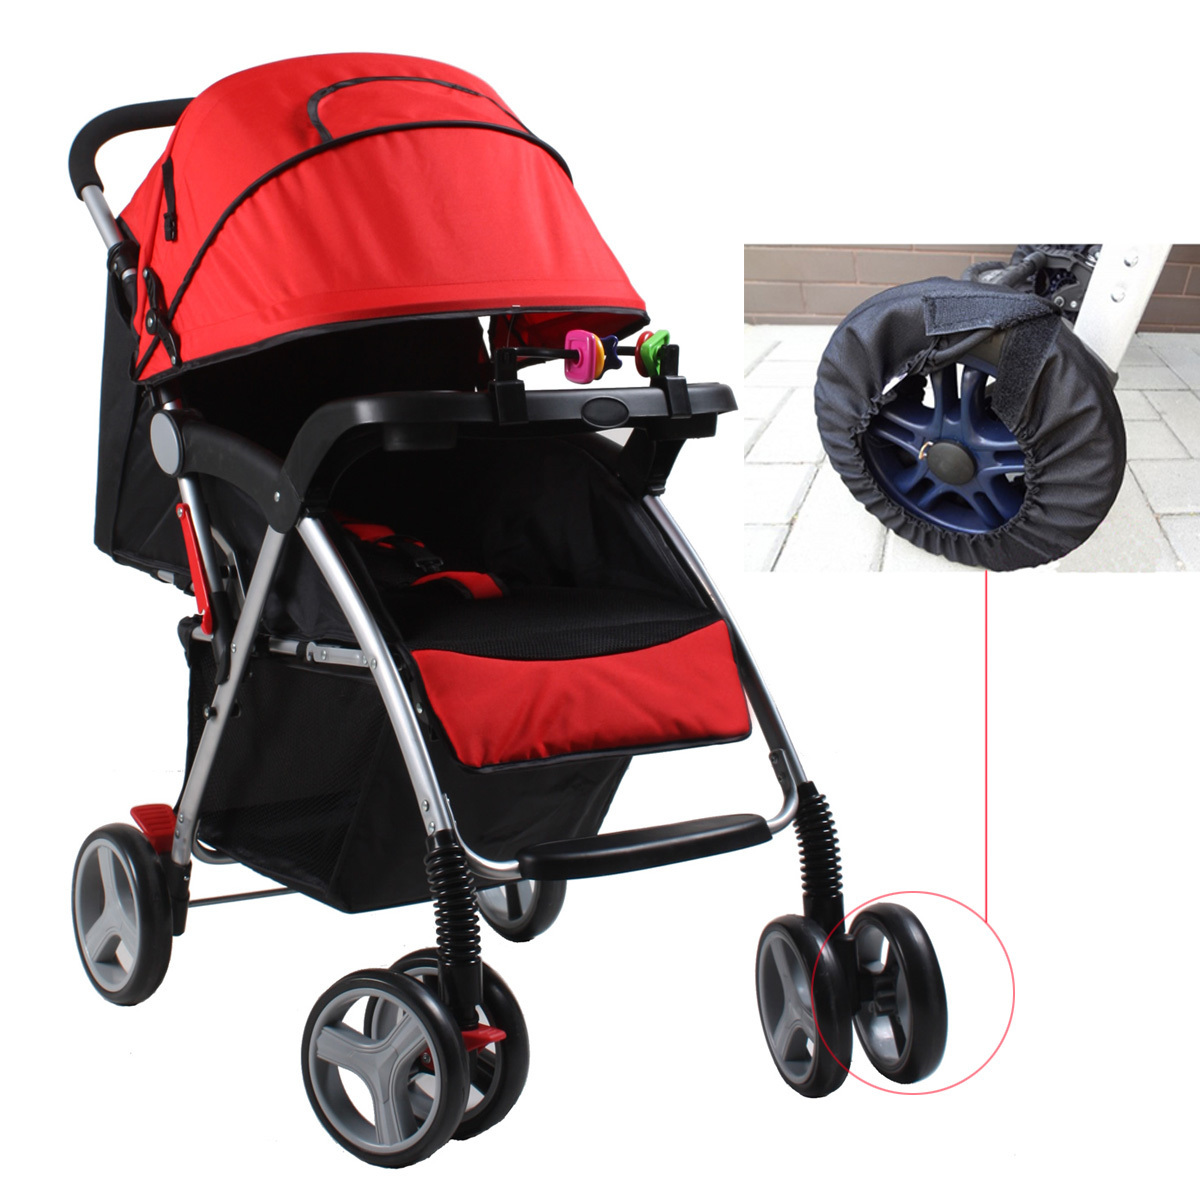 merk stroller bayi recommended